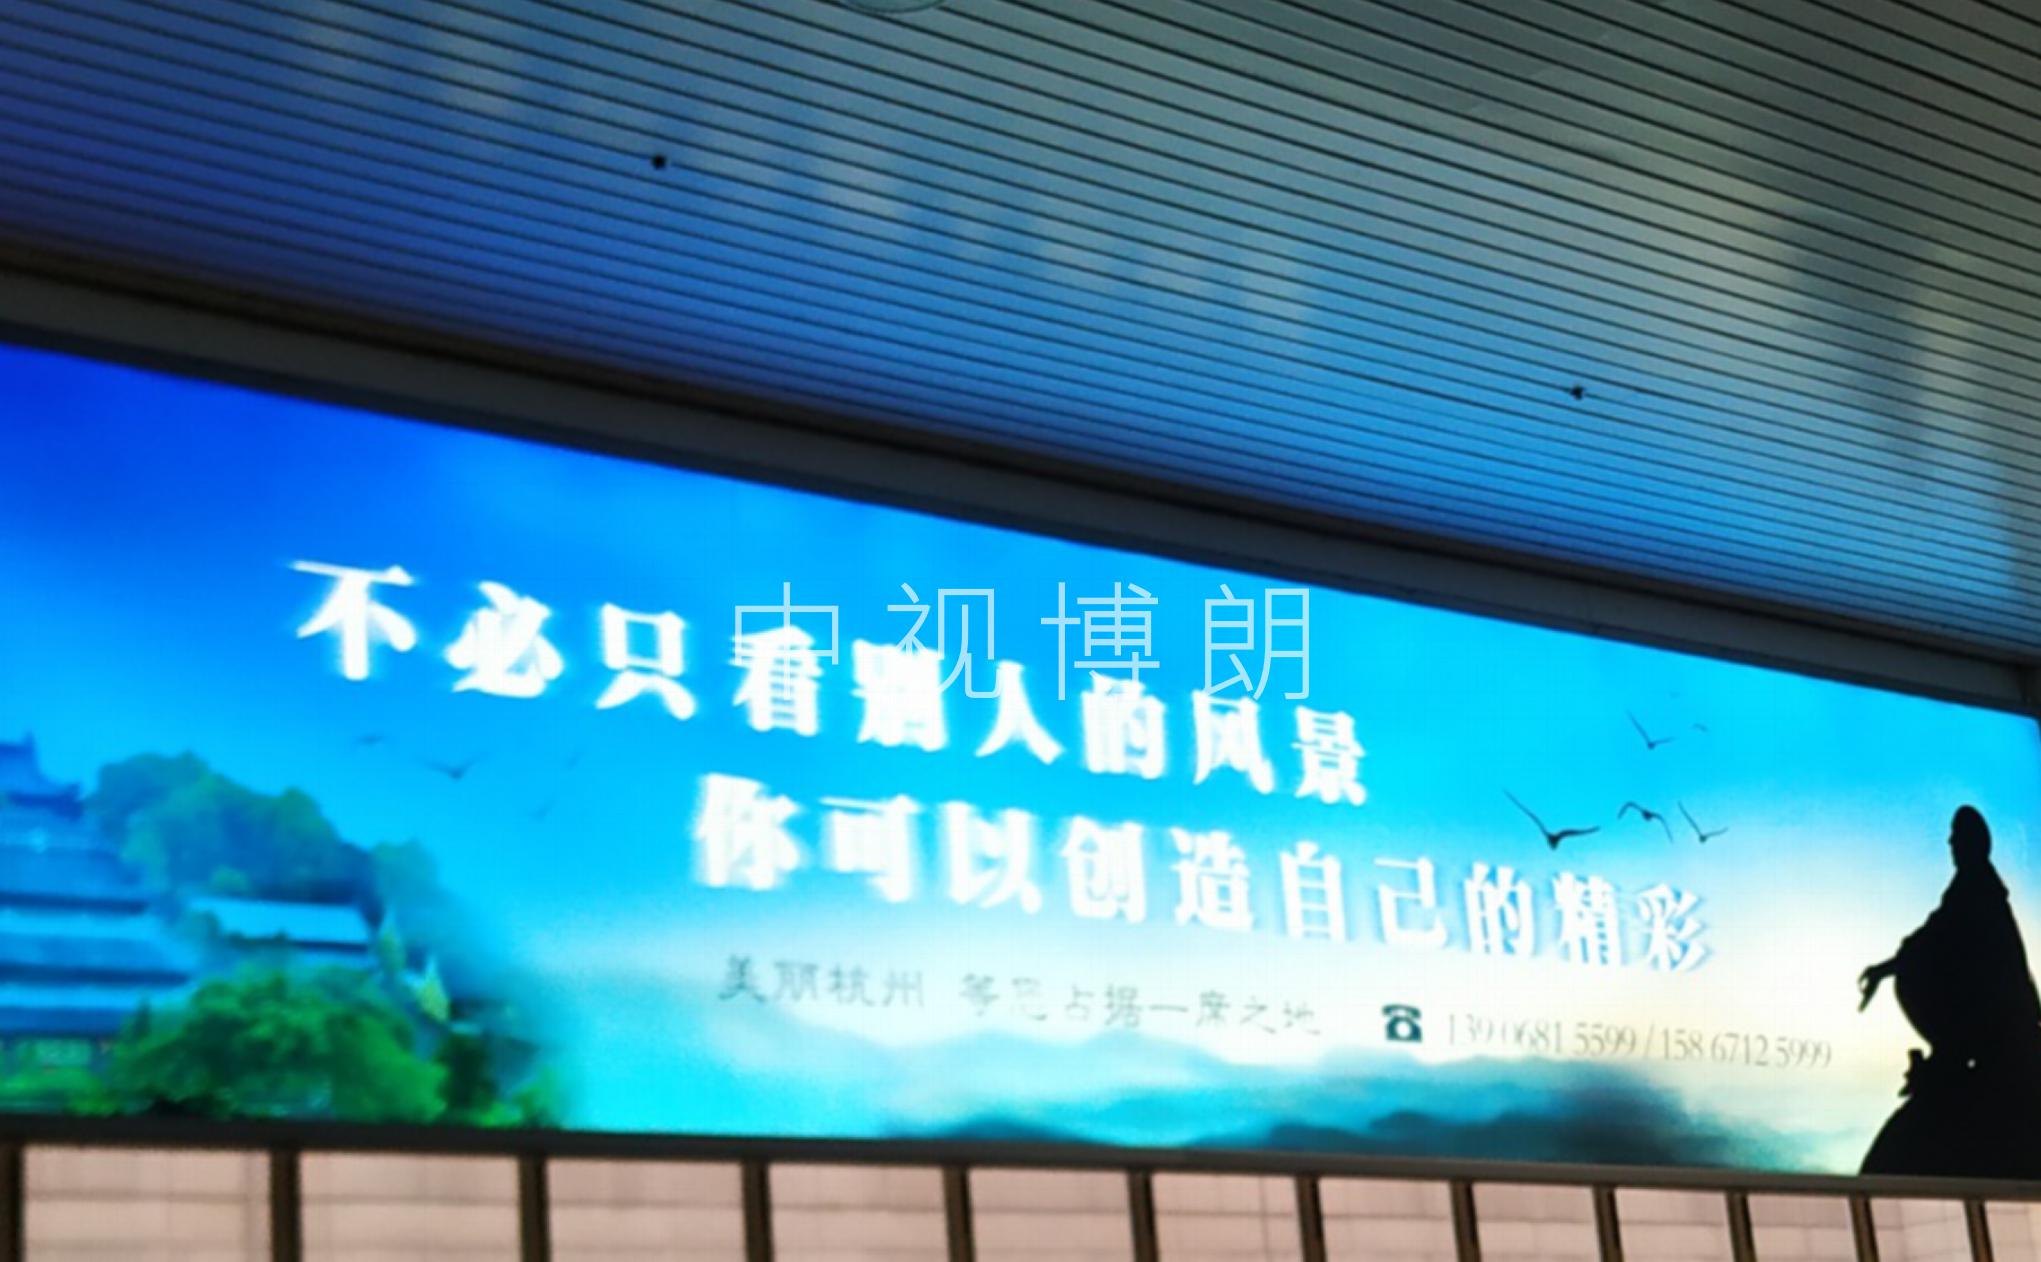 杭州站-第四候车室两侧灯箱